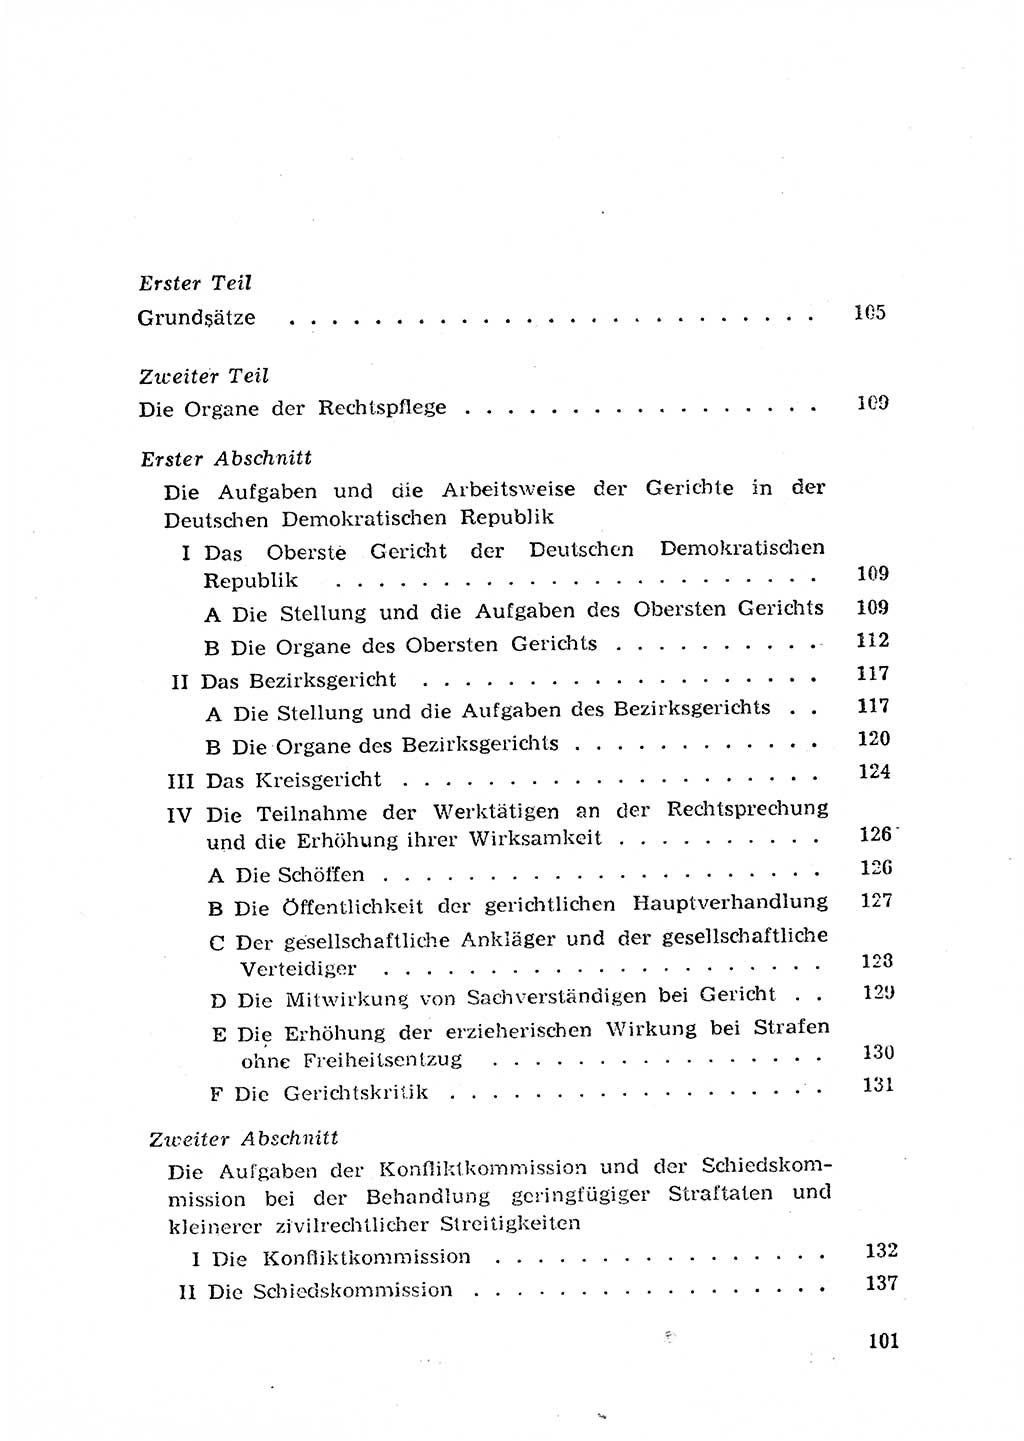 Rechtspflegeerlaß [Deutsche Demokratische Republik (DDR)] 1963, Seite 101 (R.-Pfl.-Erl. DDR 1963, S. 101)